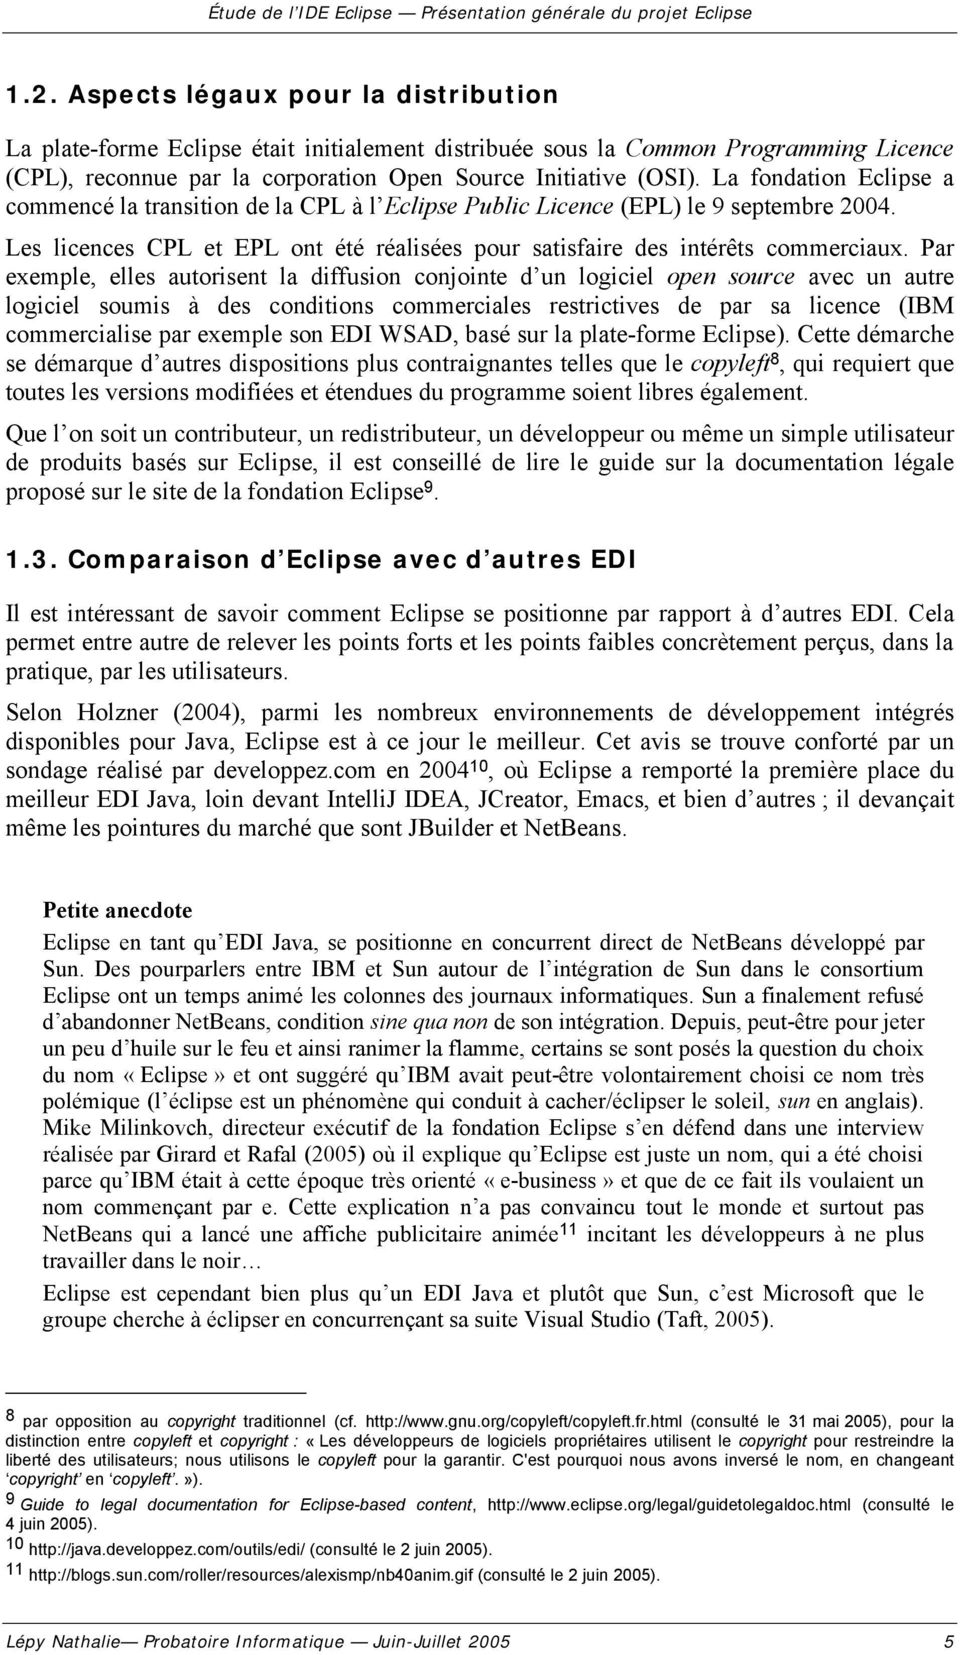 La fondation Eclipse a commencé la transition de la CPL à l Eclipse Public Licence (EPL) le 9 septembre 2004. Les licences CPL et EPL ont été réalisées pour satisfaire des intérêts commerciaux.